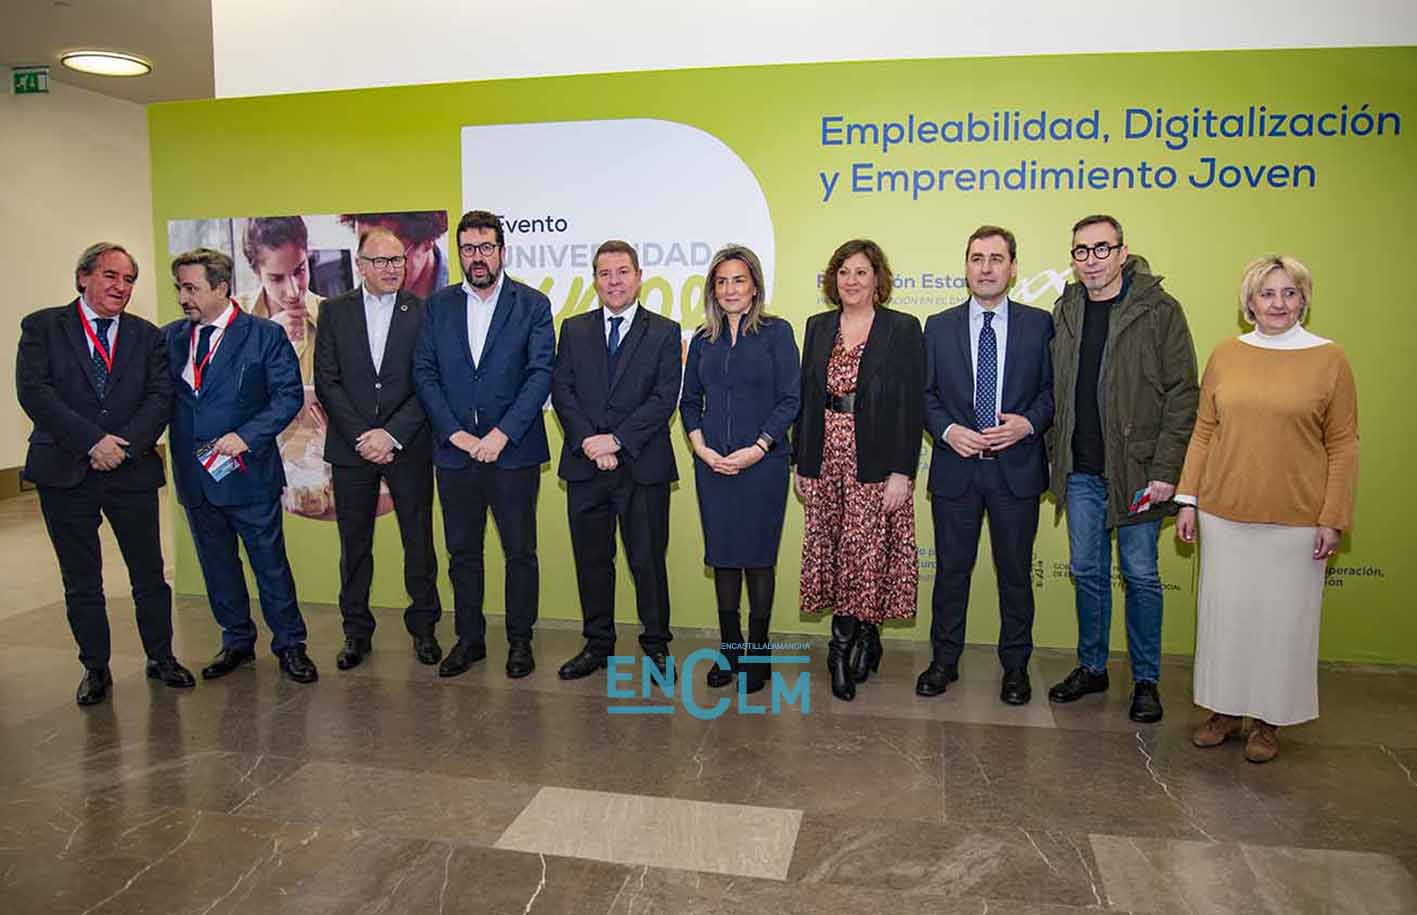 Jornadas "Empleabilidad, digitalización y emprendimiento joven", celebrada en el Palacio de Congresos El Greco. Foto: Rebeca Arango.